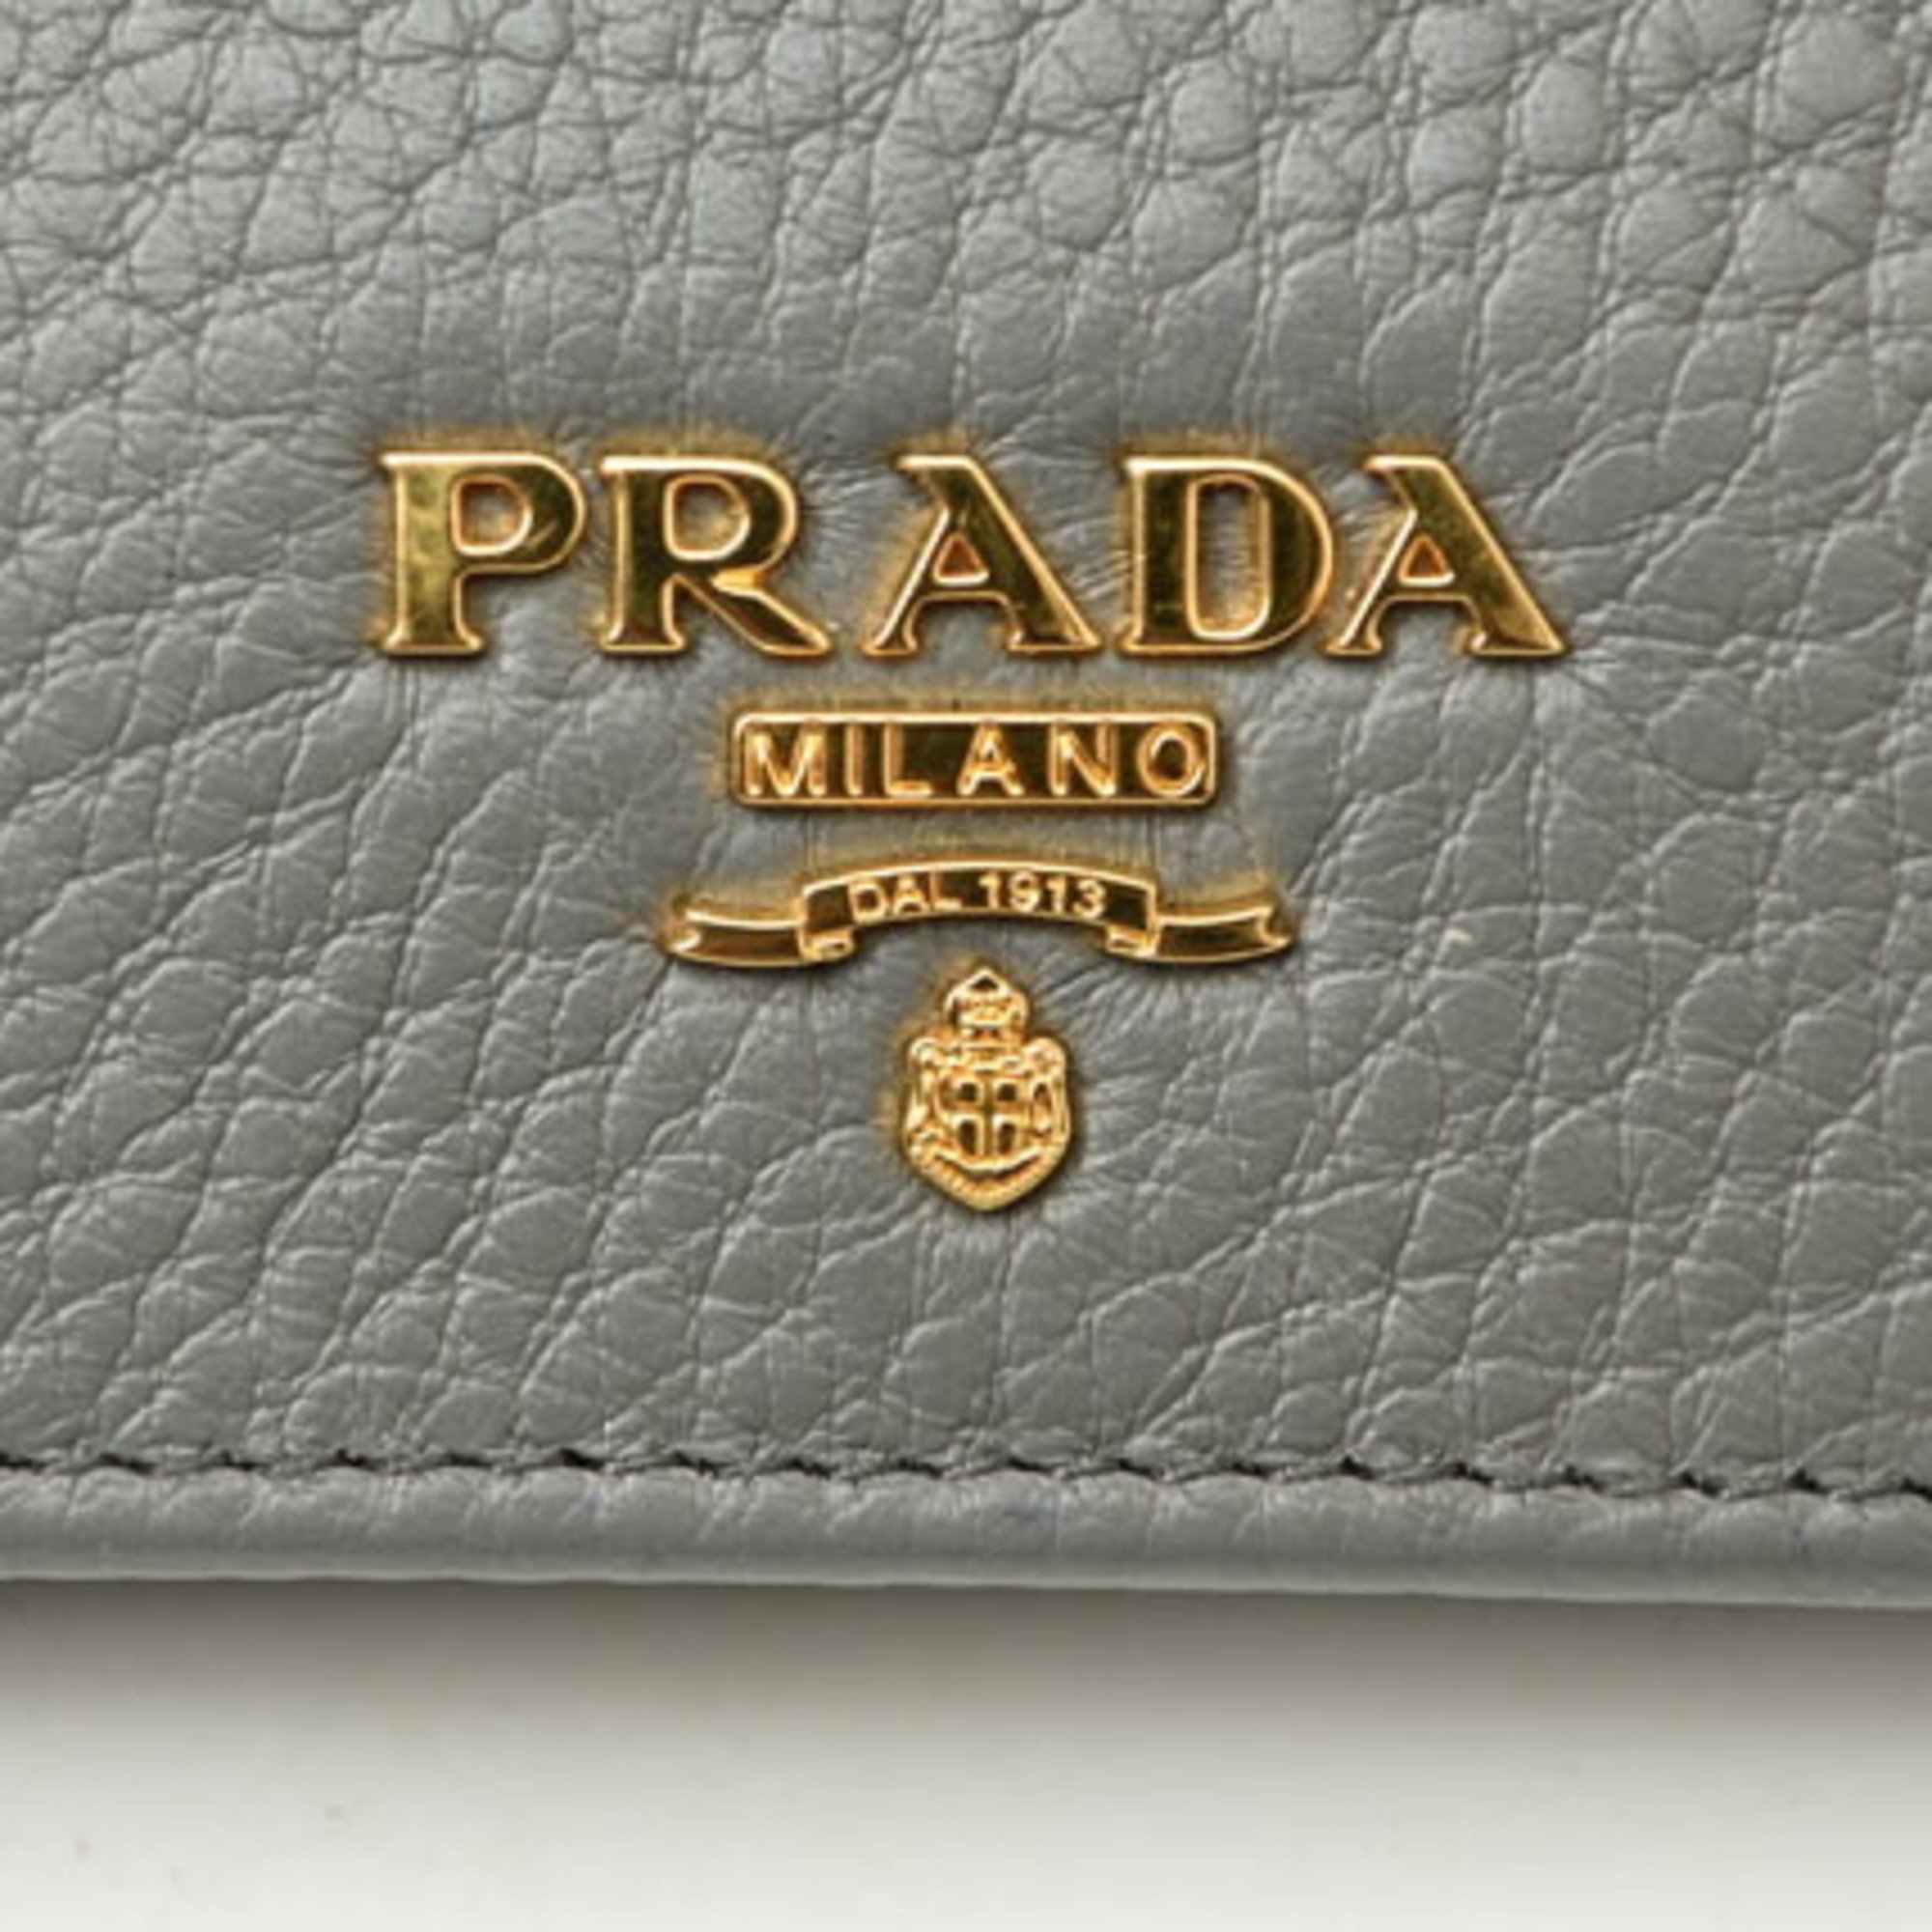 PRADA Folding Wallet 1MV204 VITELLO GRAIN Leather MARMO Grey